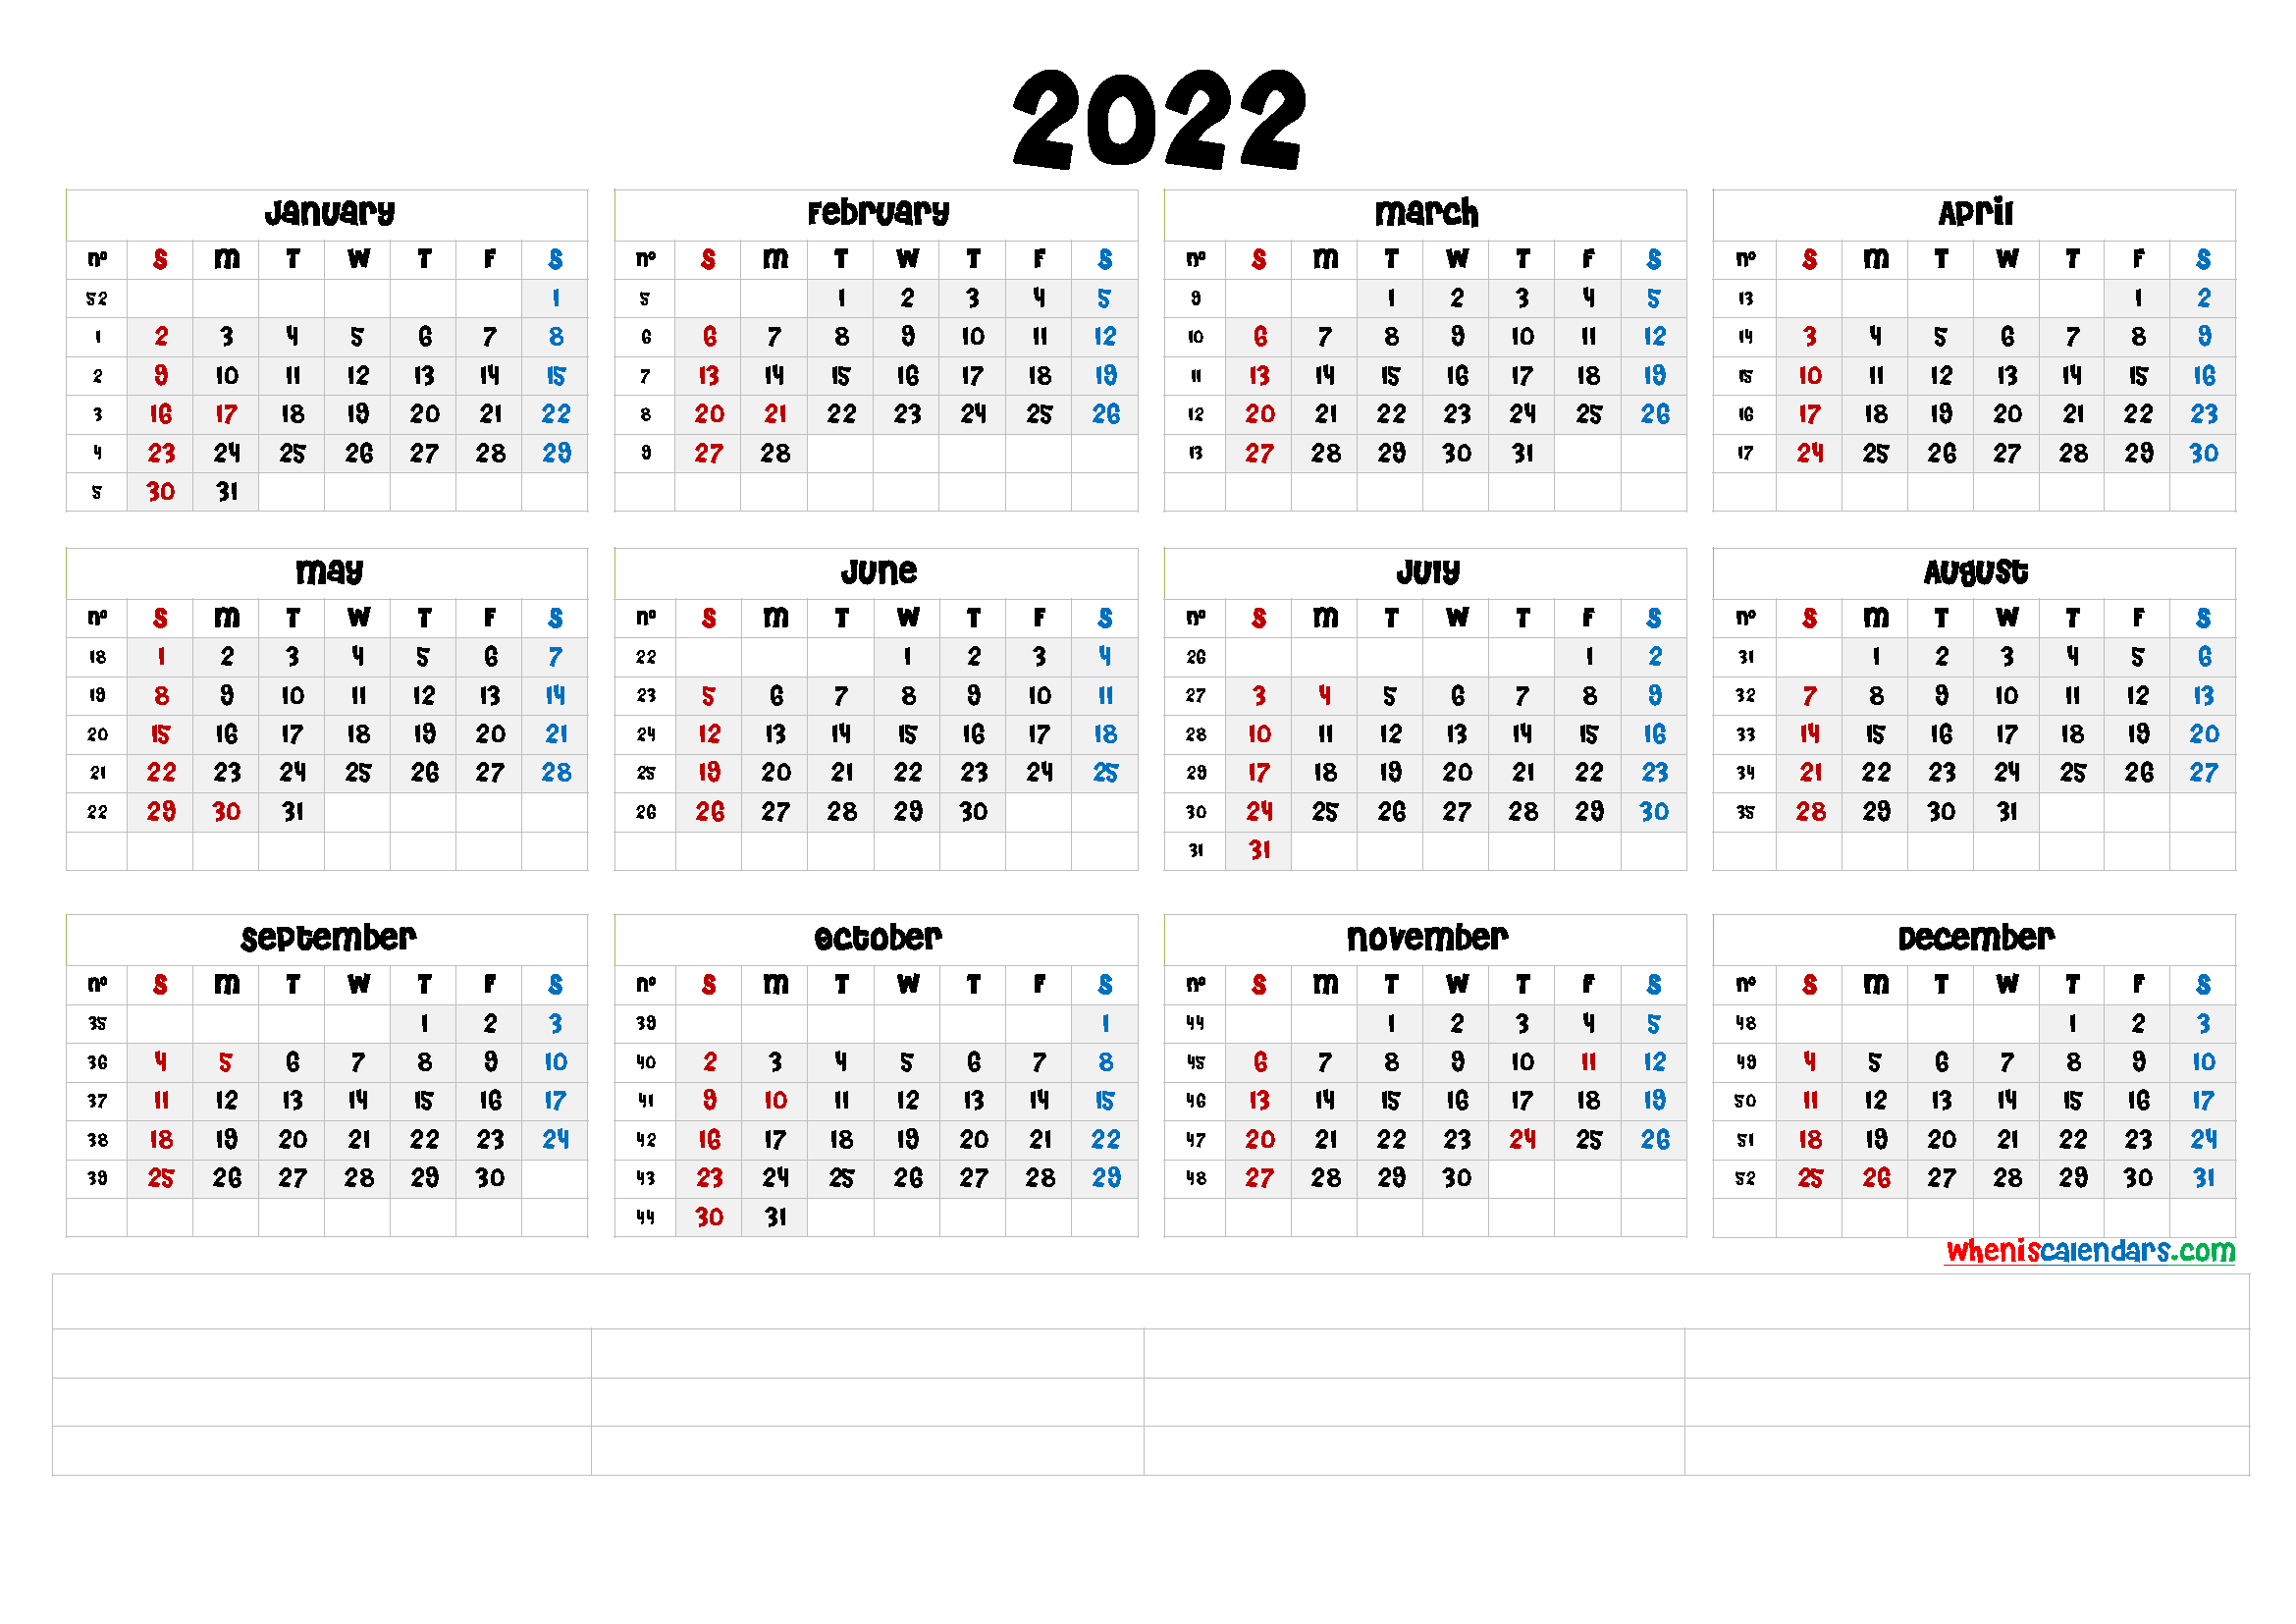 202 calendar with week numbers